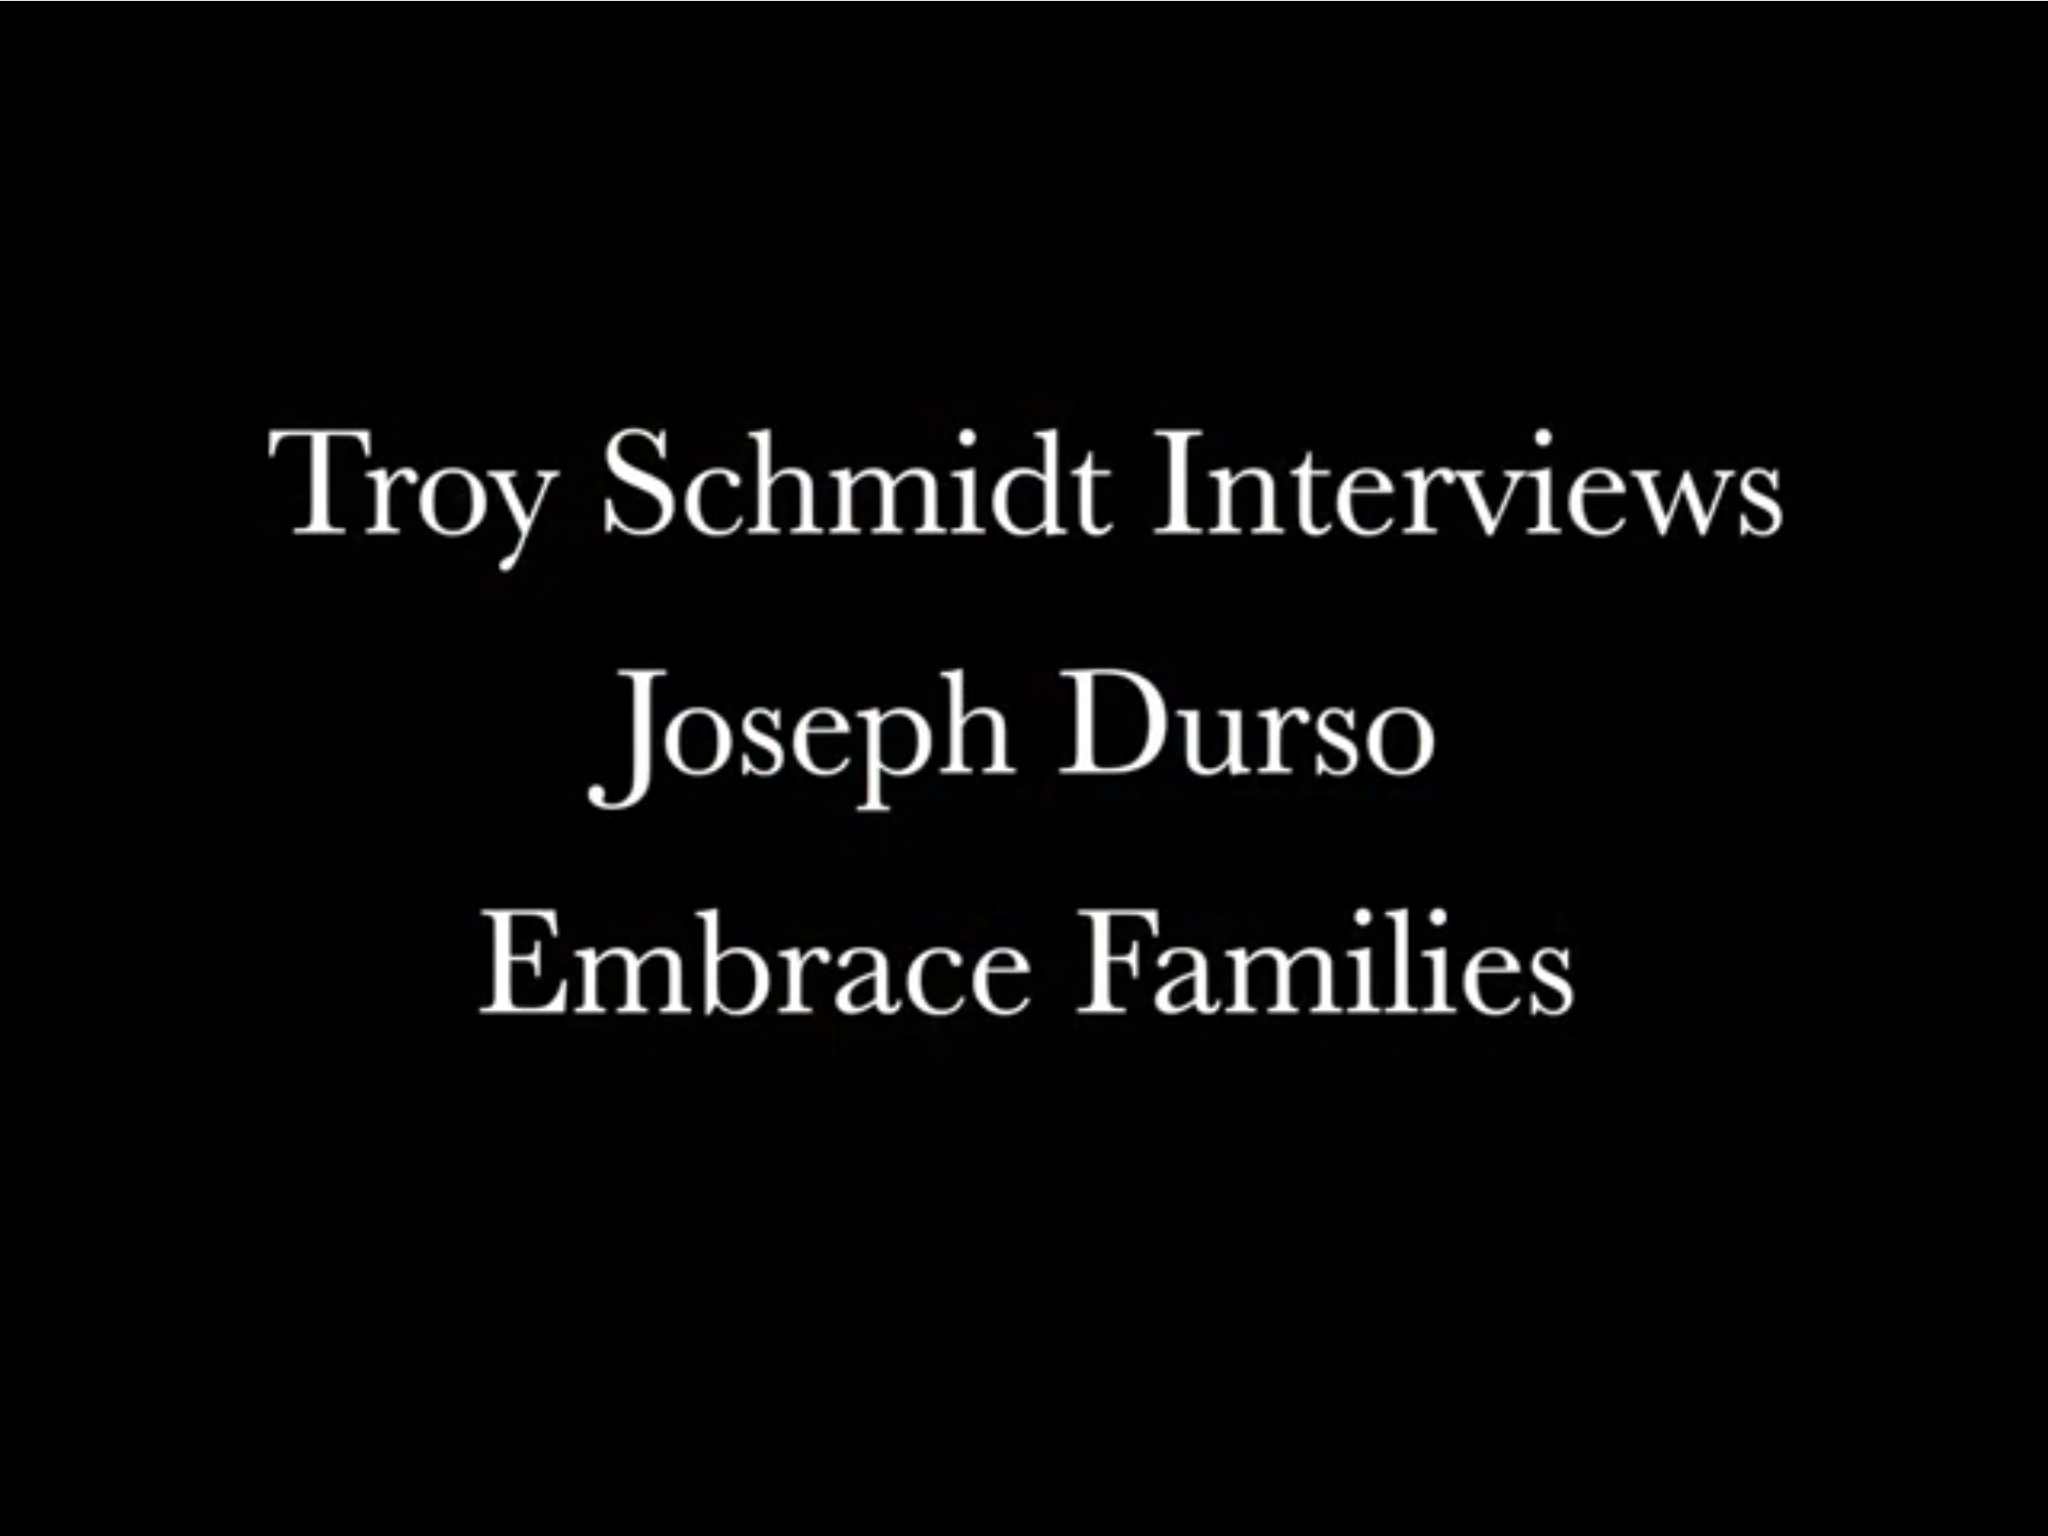 Troy Schmidt Interviews Joseph Durso